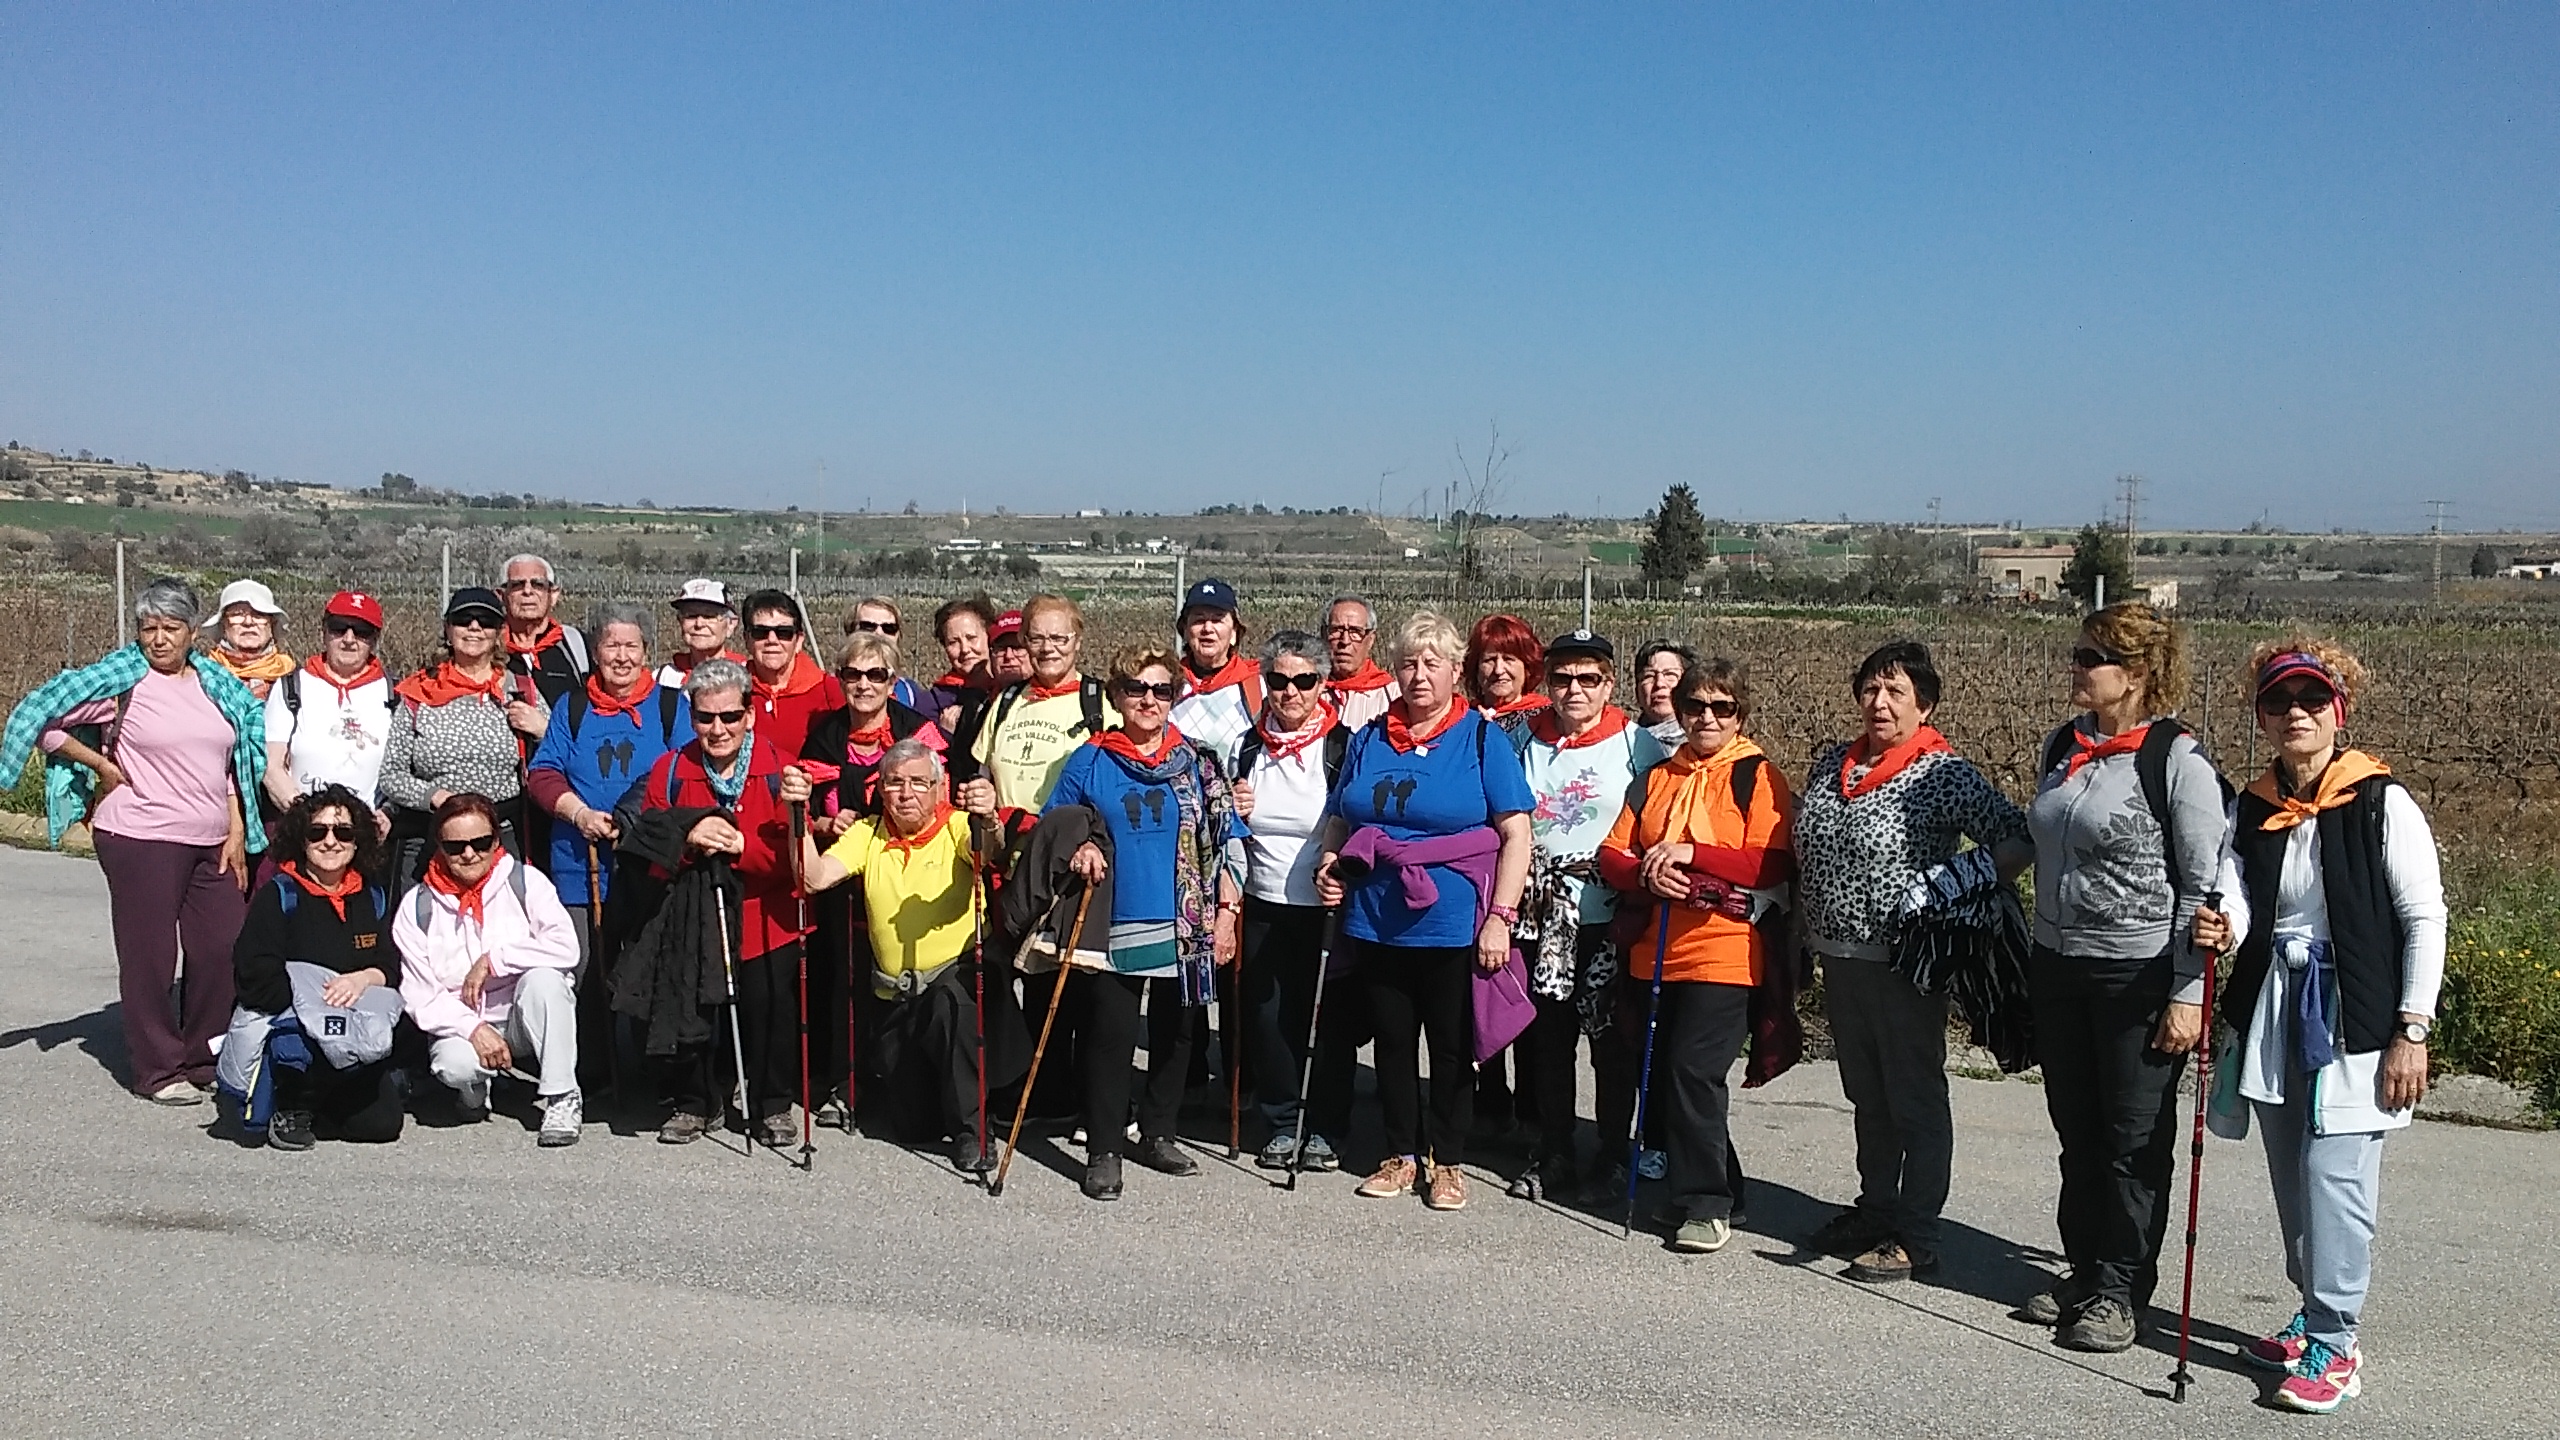 Foto de grup de la passejada celebrada a Vilafranca del Penedès